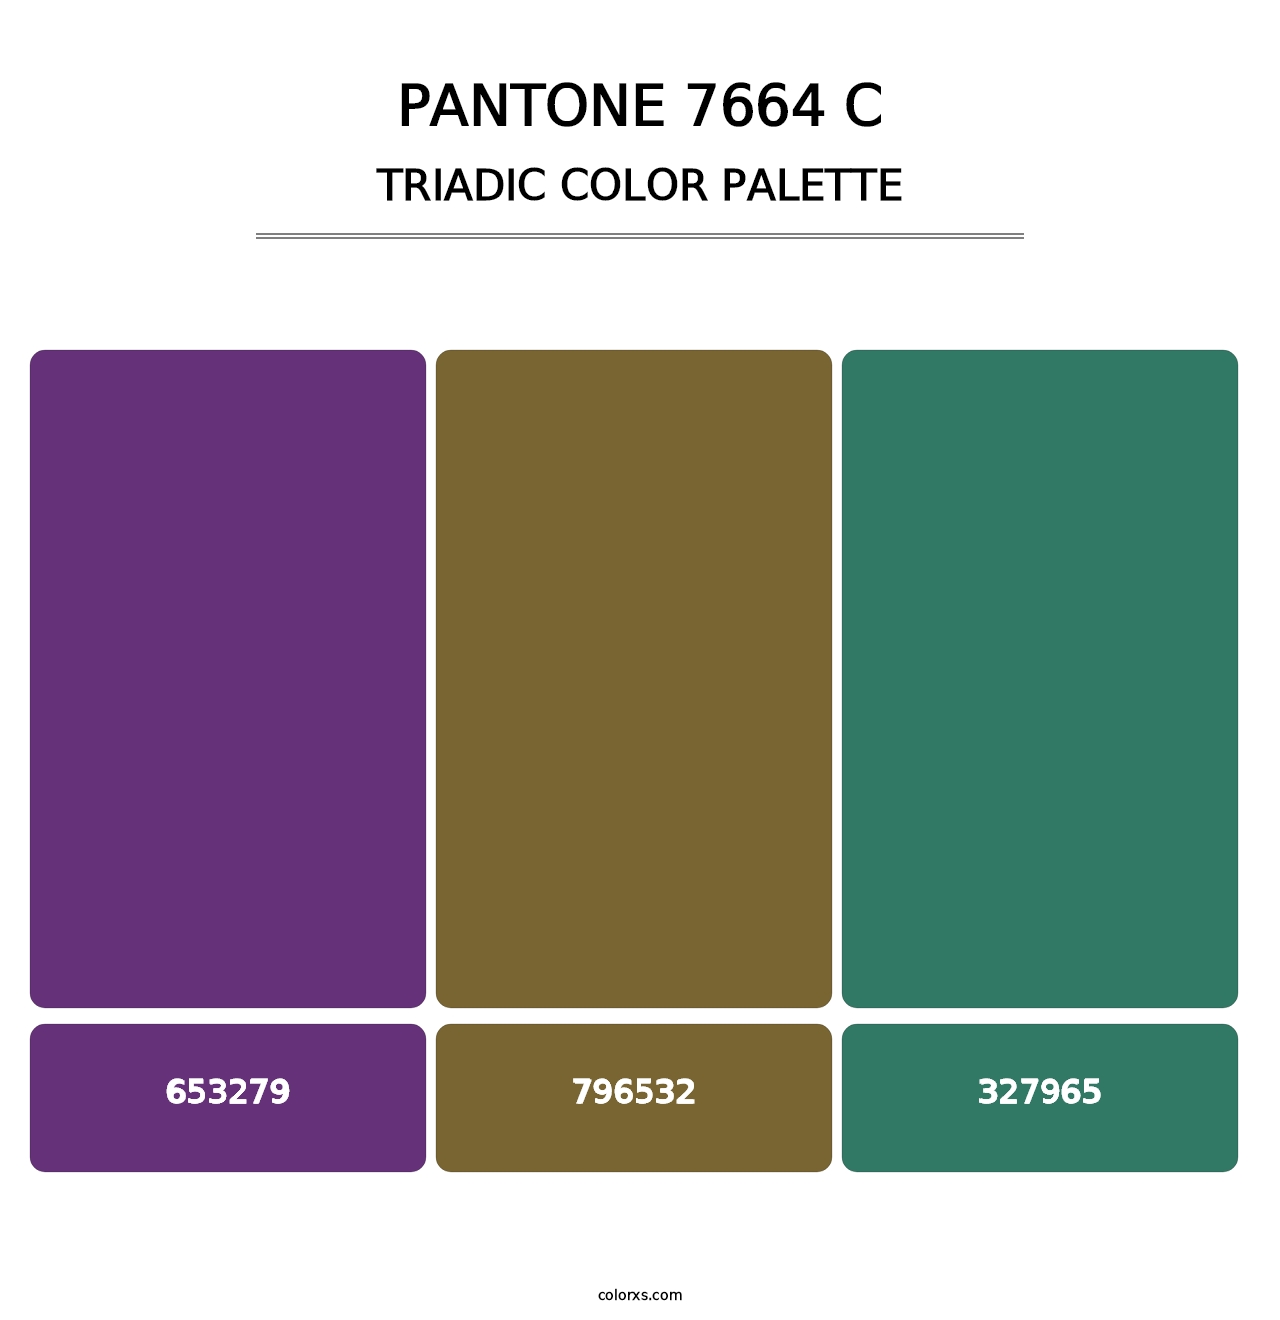 PANTONE 7664 C - Triadic Color Palette